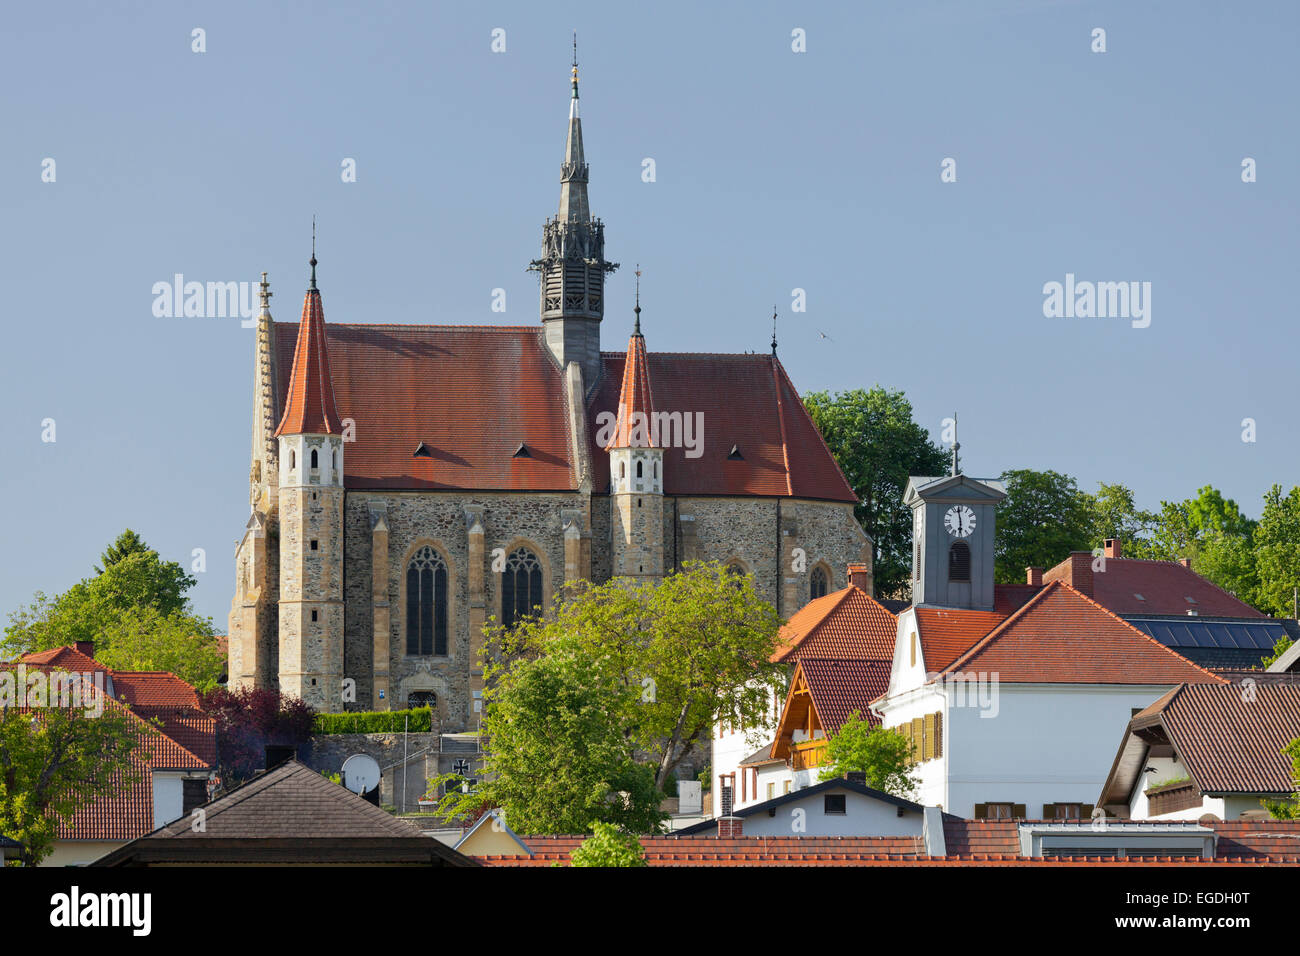 Pilgrimage church Mariasdorf, Burgenland, Austria Stock Photo